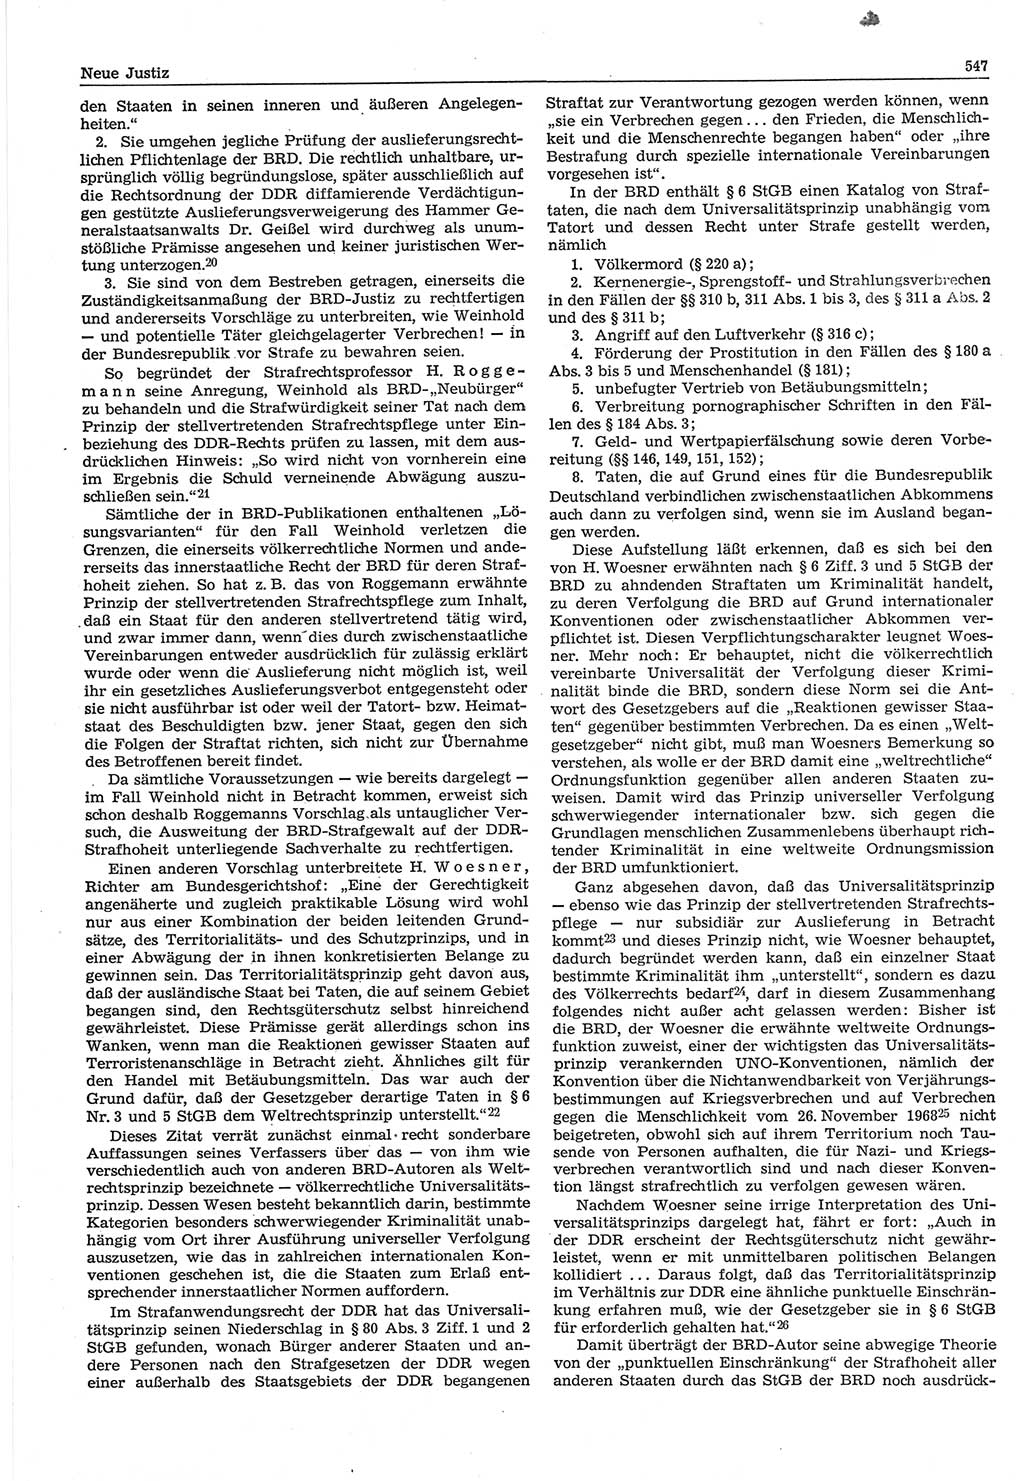 Neue Justiz (NJ), Zeitschrift für Recht und Rechtswissenschaft-Zeitschrift, sozialistisches Recht und Gesetzlichkeit, 31. Jahrgang 1977, Seite 547 (NJ DDR 1977, S. 547)